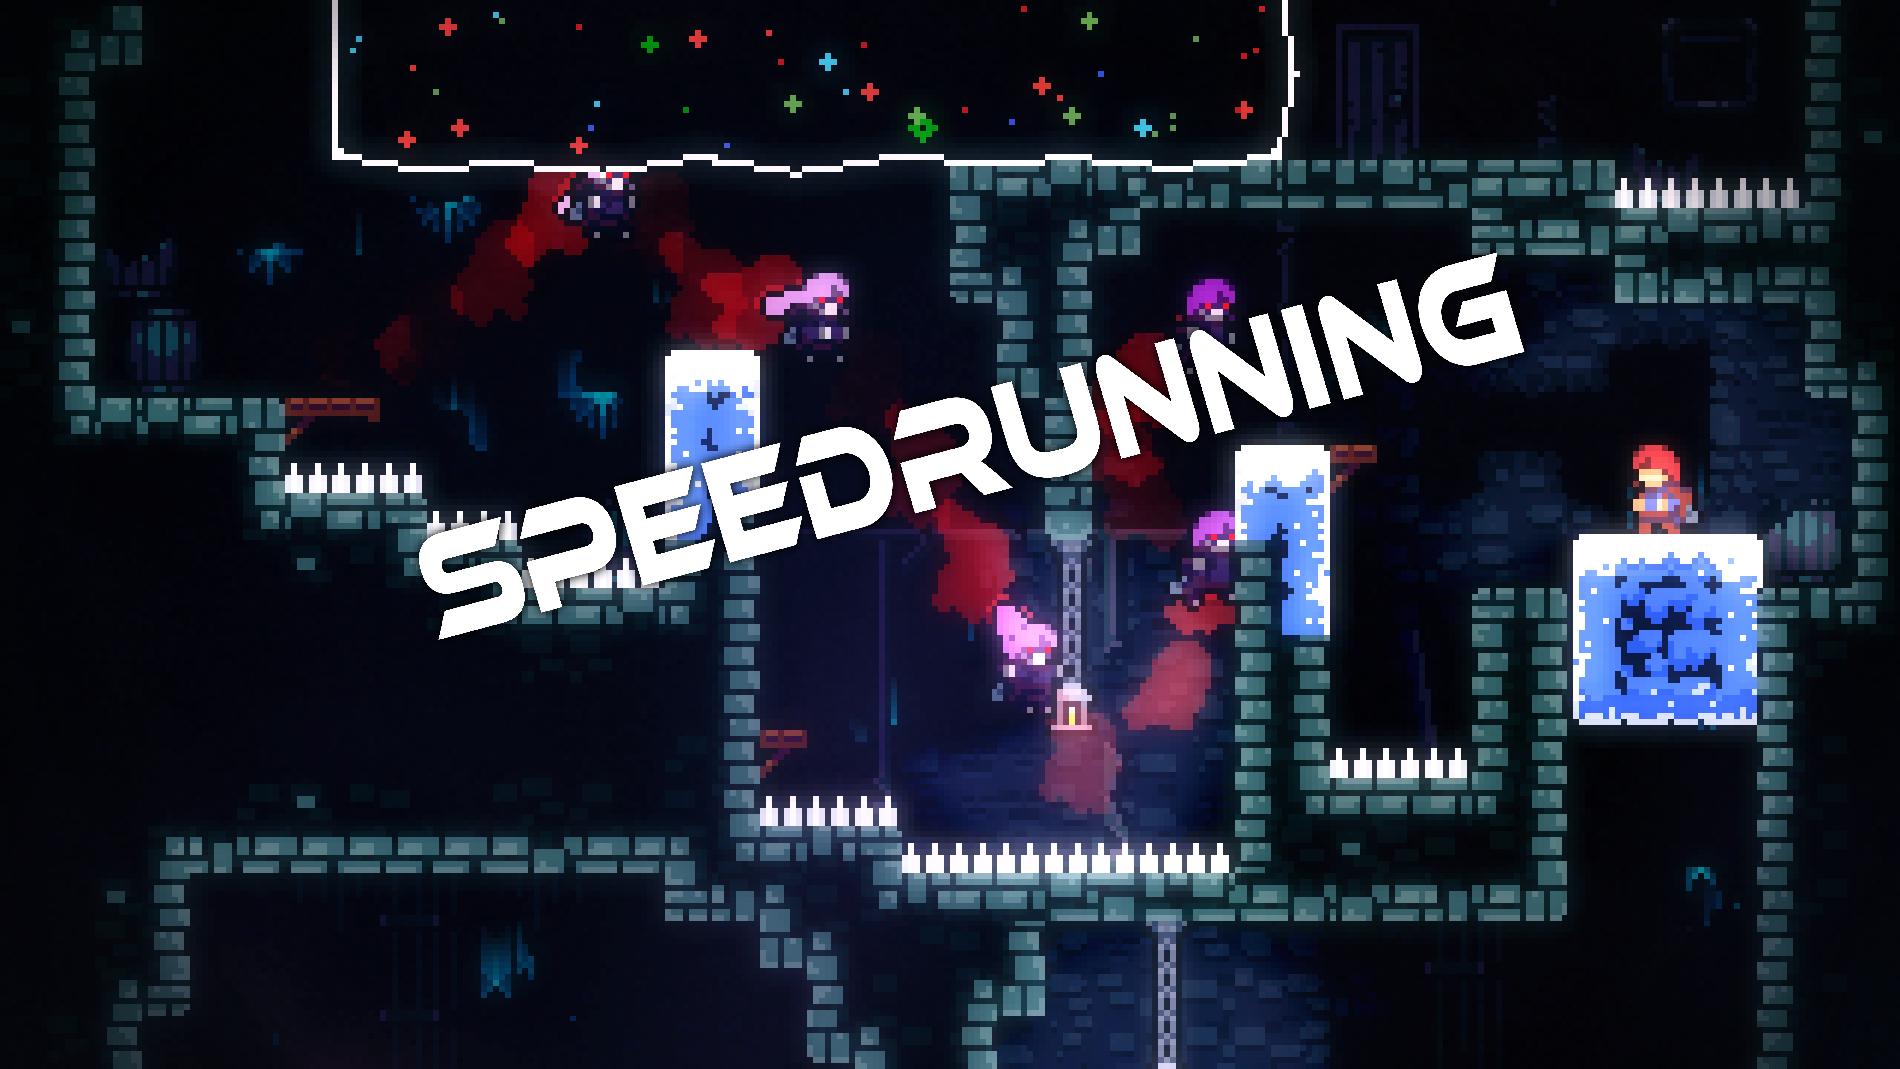 I made an ingame speedrun timer!